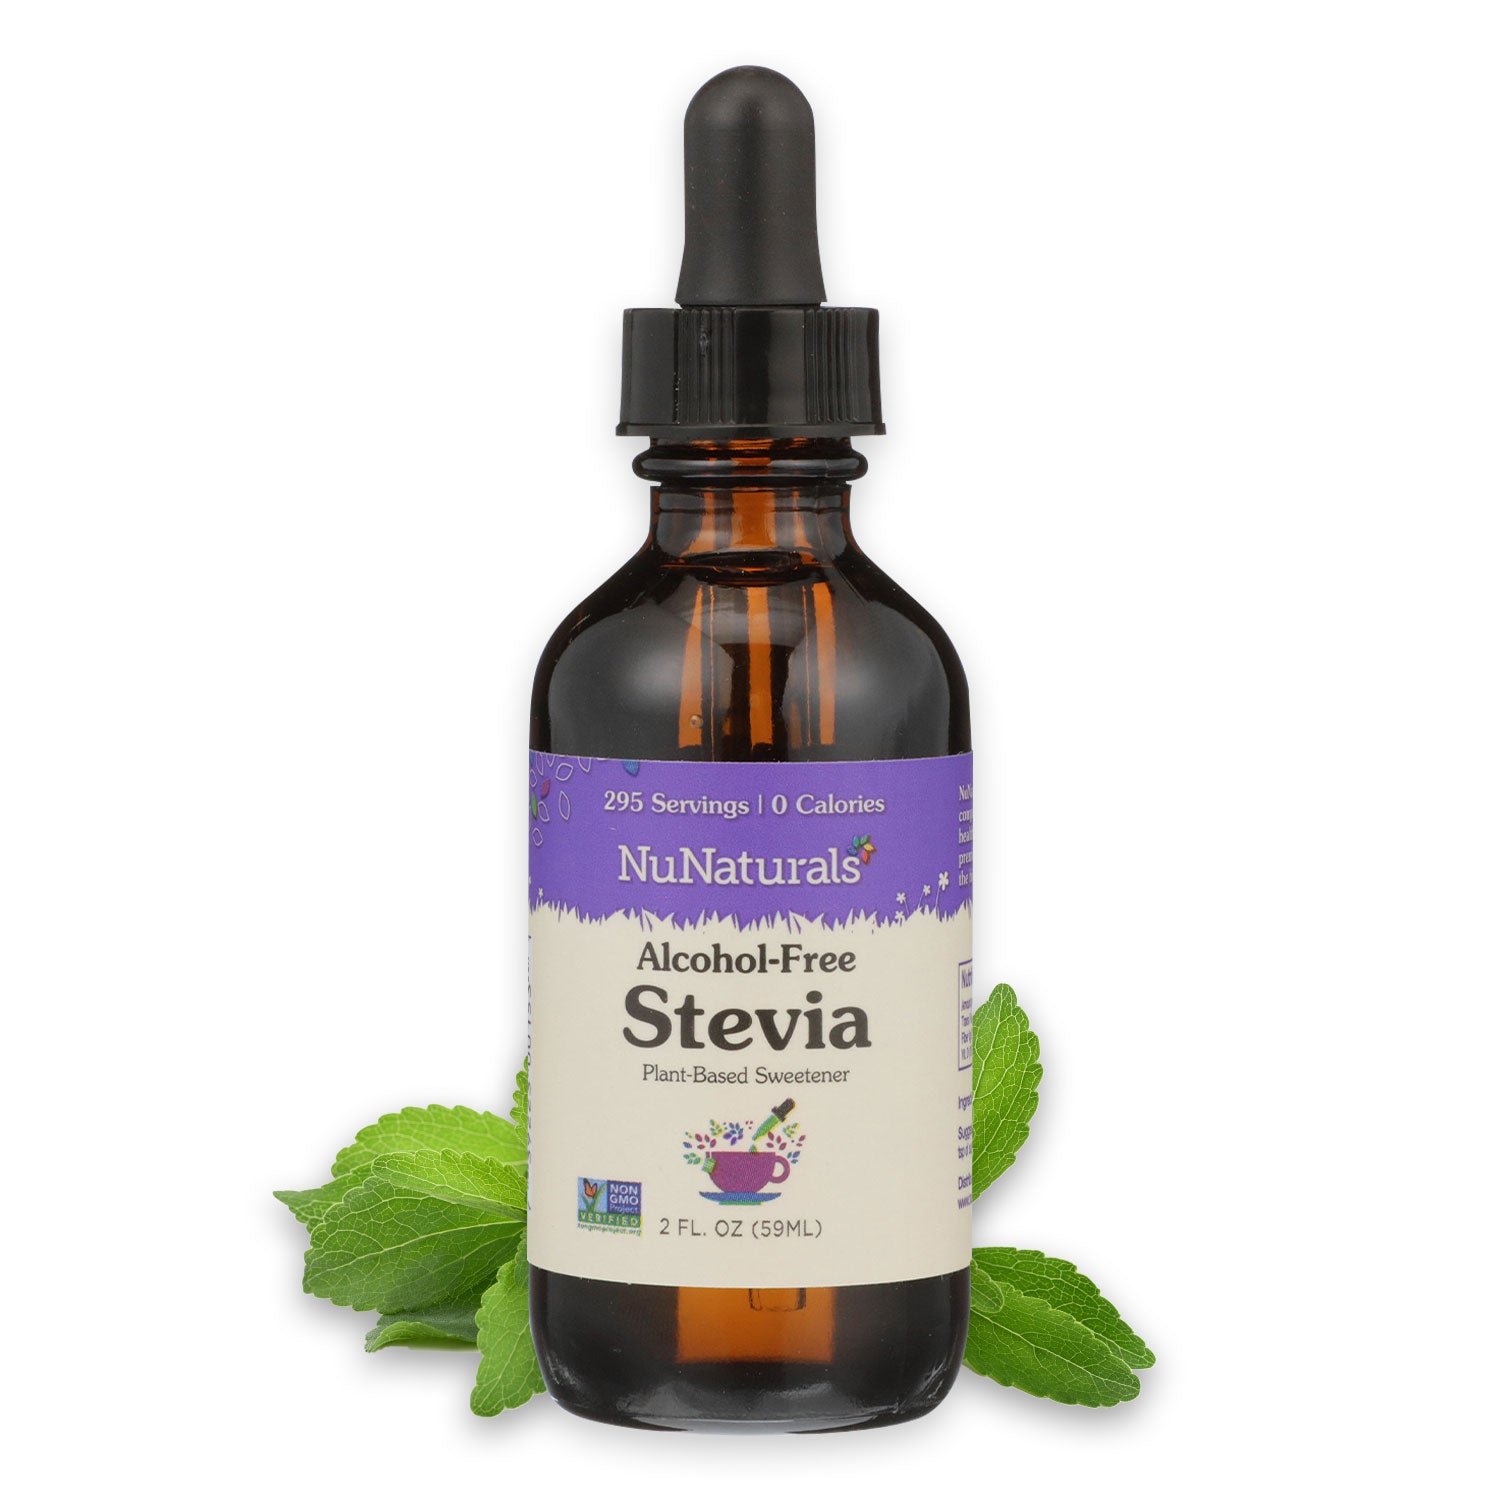 Stevia-based sweeteners